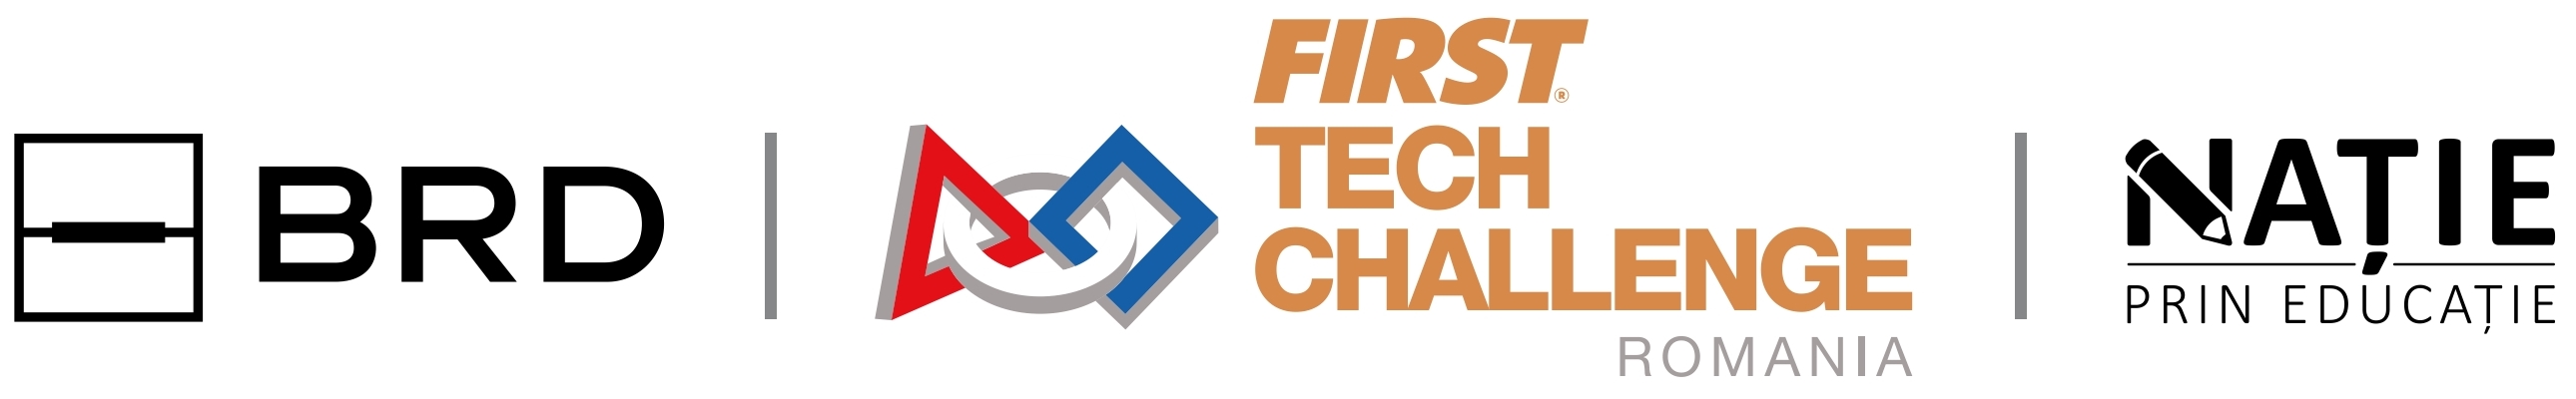 BRD FIRST Tech Challenge